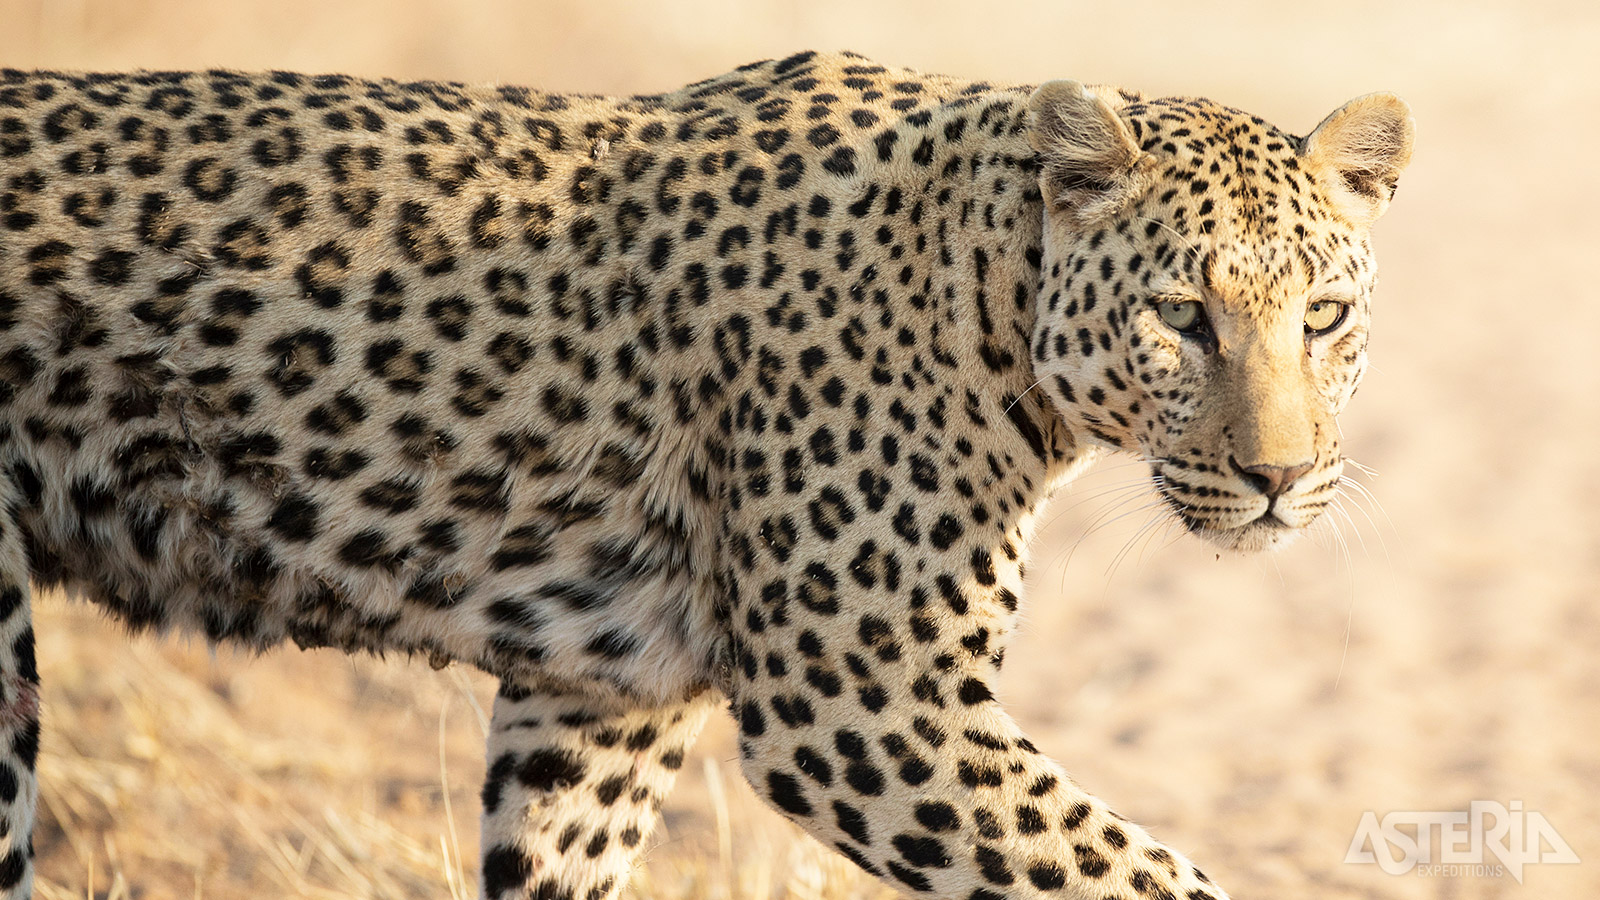 Etosha is het grootste nationaal park van Namibië en één van de bekendste safarispots van zuidelijk Afrika